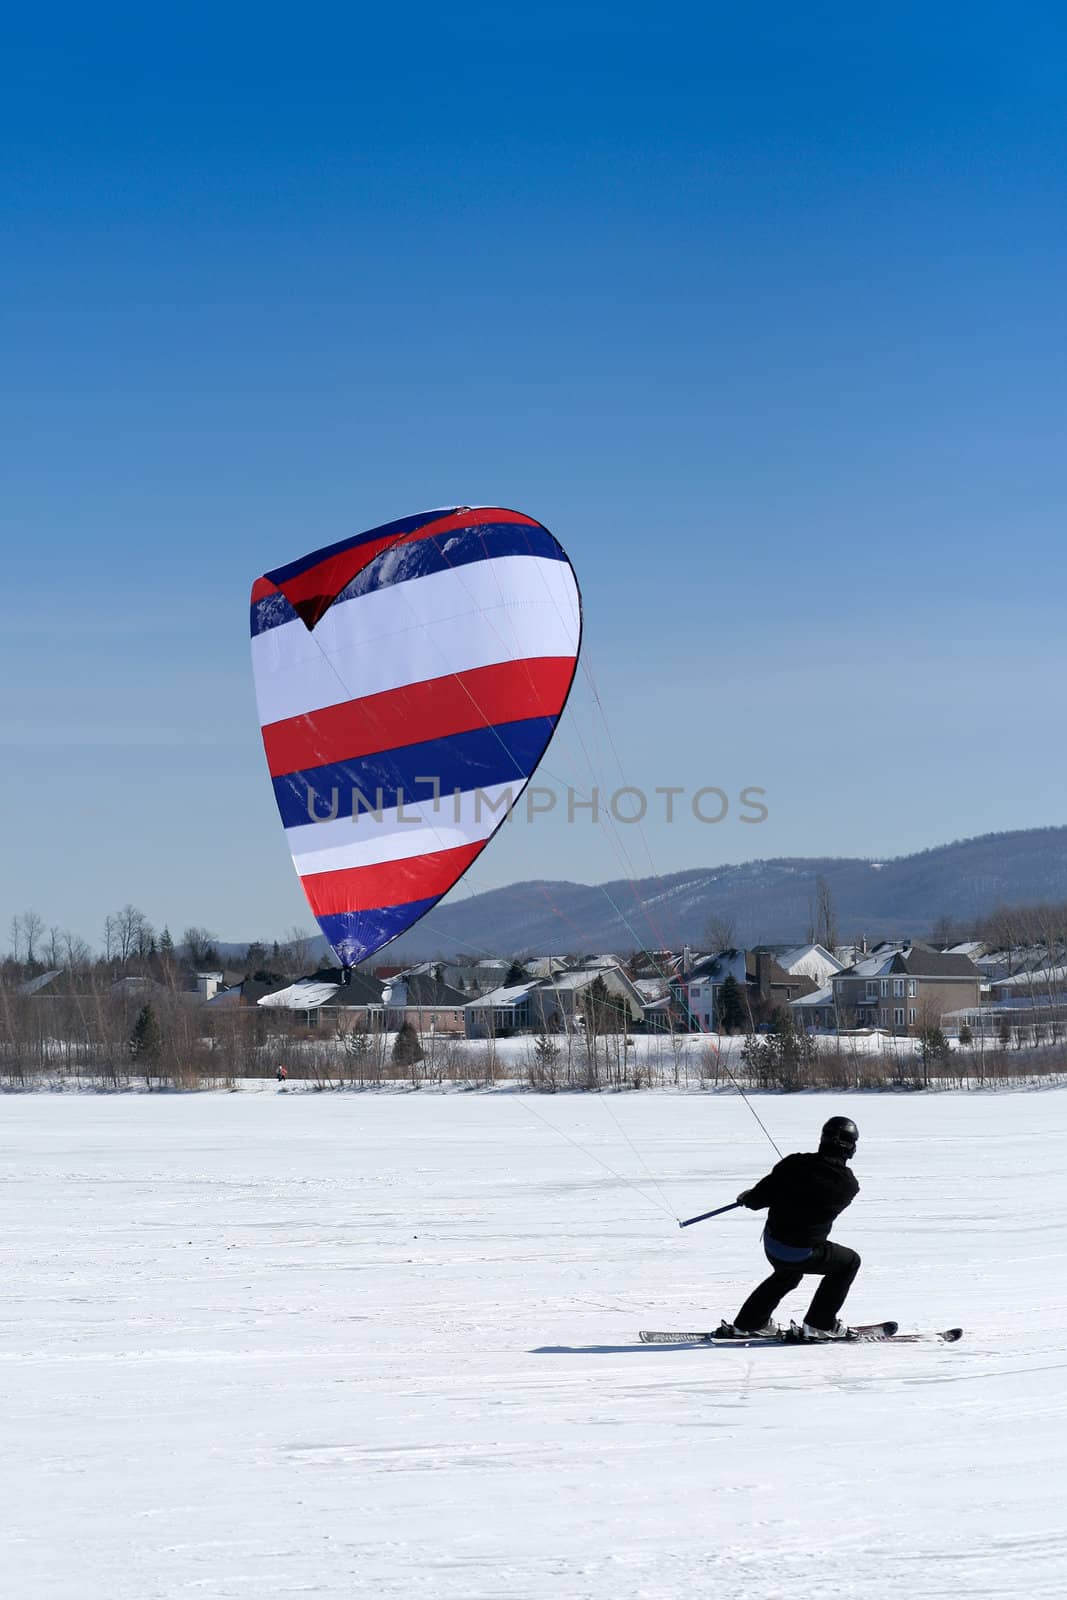 Ski kiter by Hbak